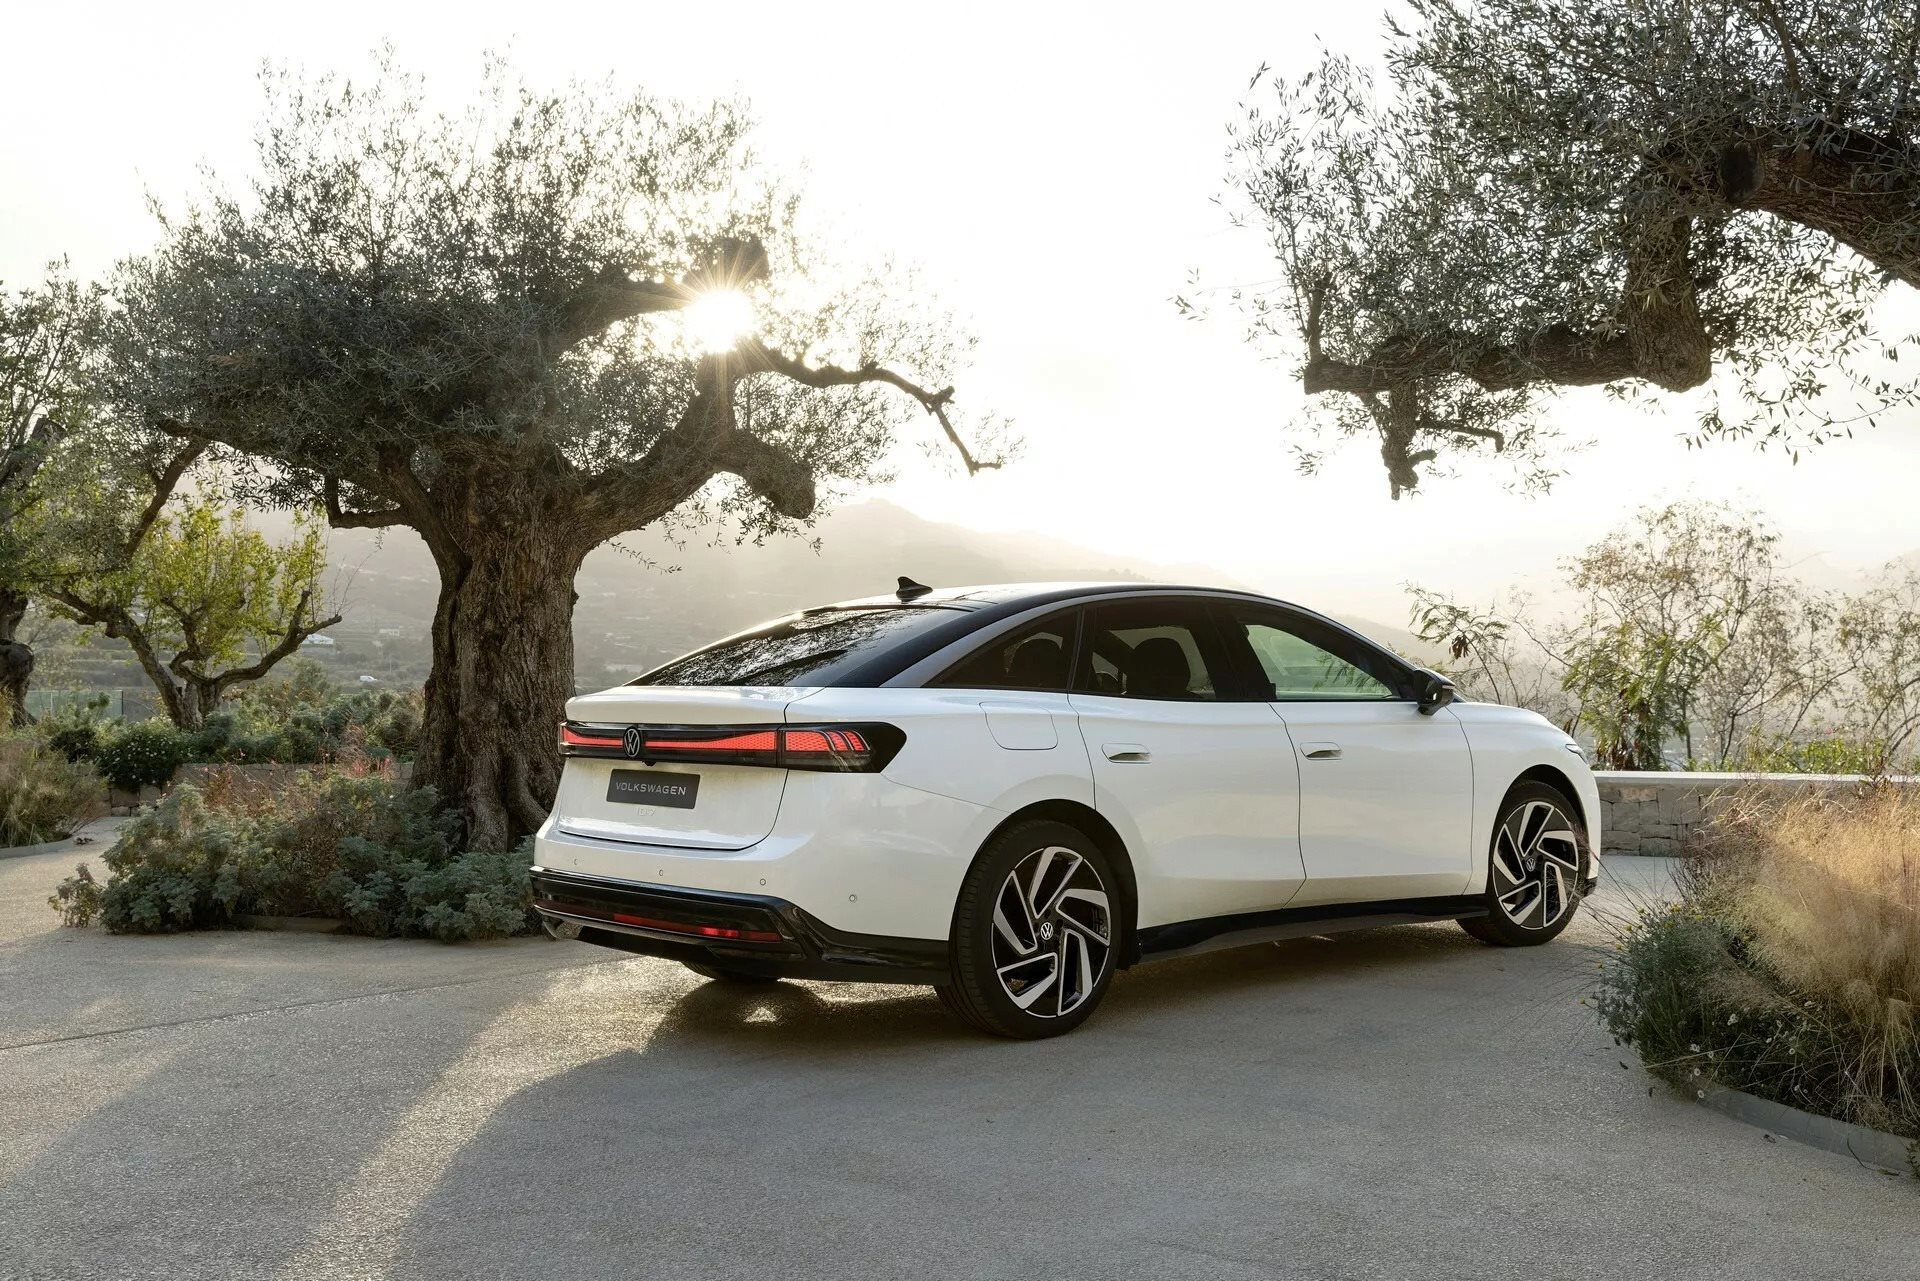 Nếu có ý định mua một chiếc ô tô điện trong 2 năm tới, bạn sẽ hối tiếc nếu bỏ qua mẫu Volkswagen đẹp ‘không tì vết’, tầm hoạt động lên đến 700 km này - Ảnh 10.